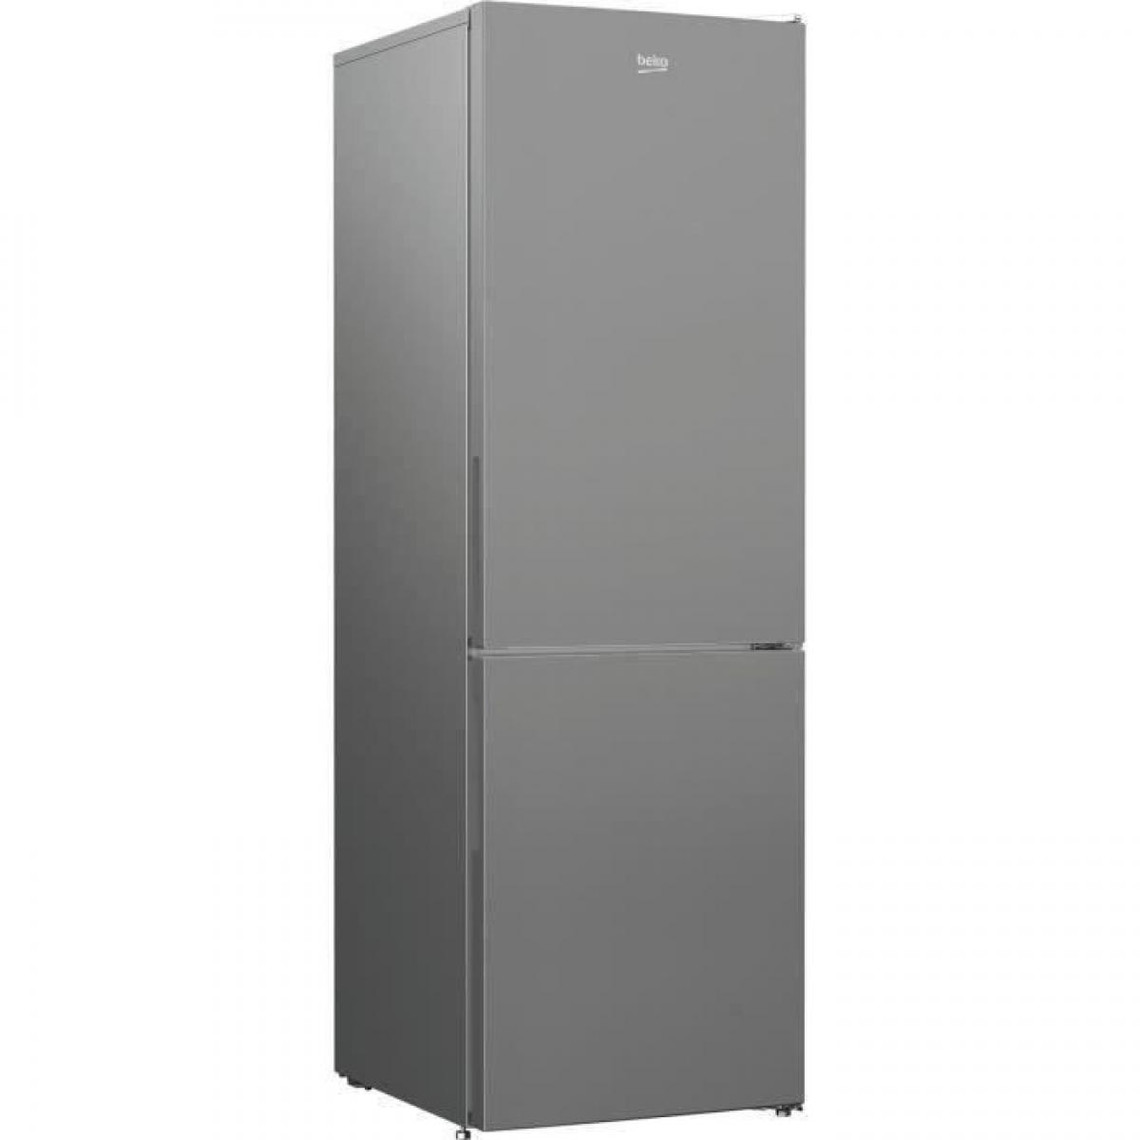 Beko Réfrigérateur congélateur bas - RCNA366K34SN - 324 L (215+109) - Froid ventilé - NeoFrost - A+ - Gris acier